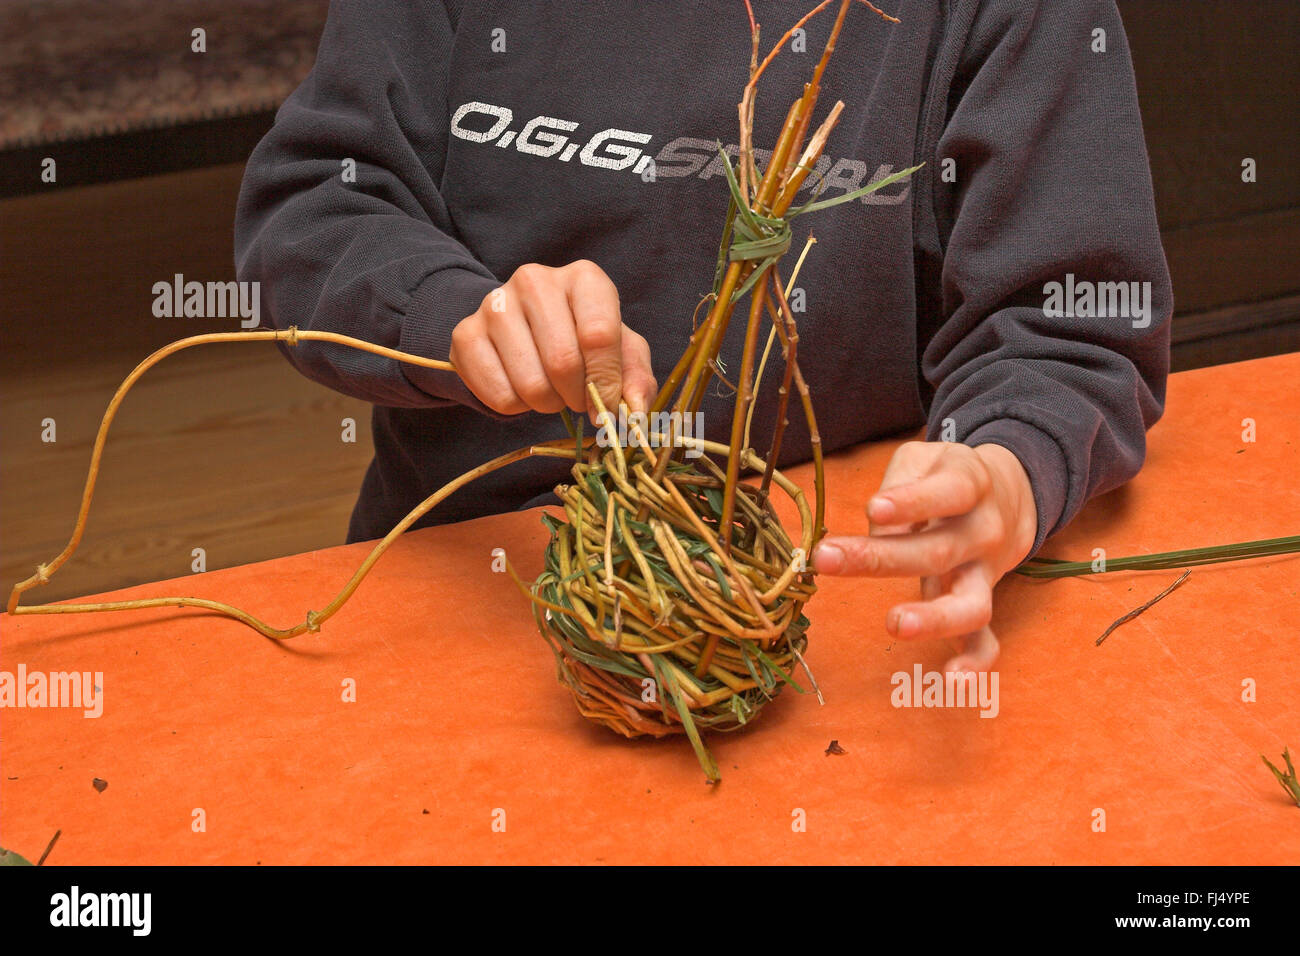 Le matériel du nid de pie, Ball boy tressage des branches de saule, Allemagne Banque D'Images